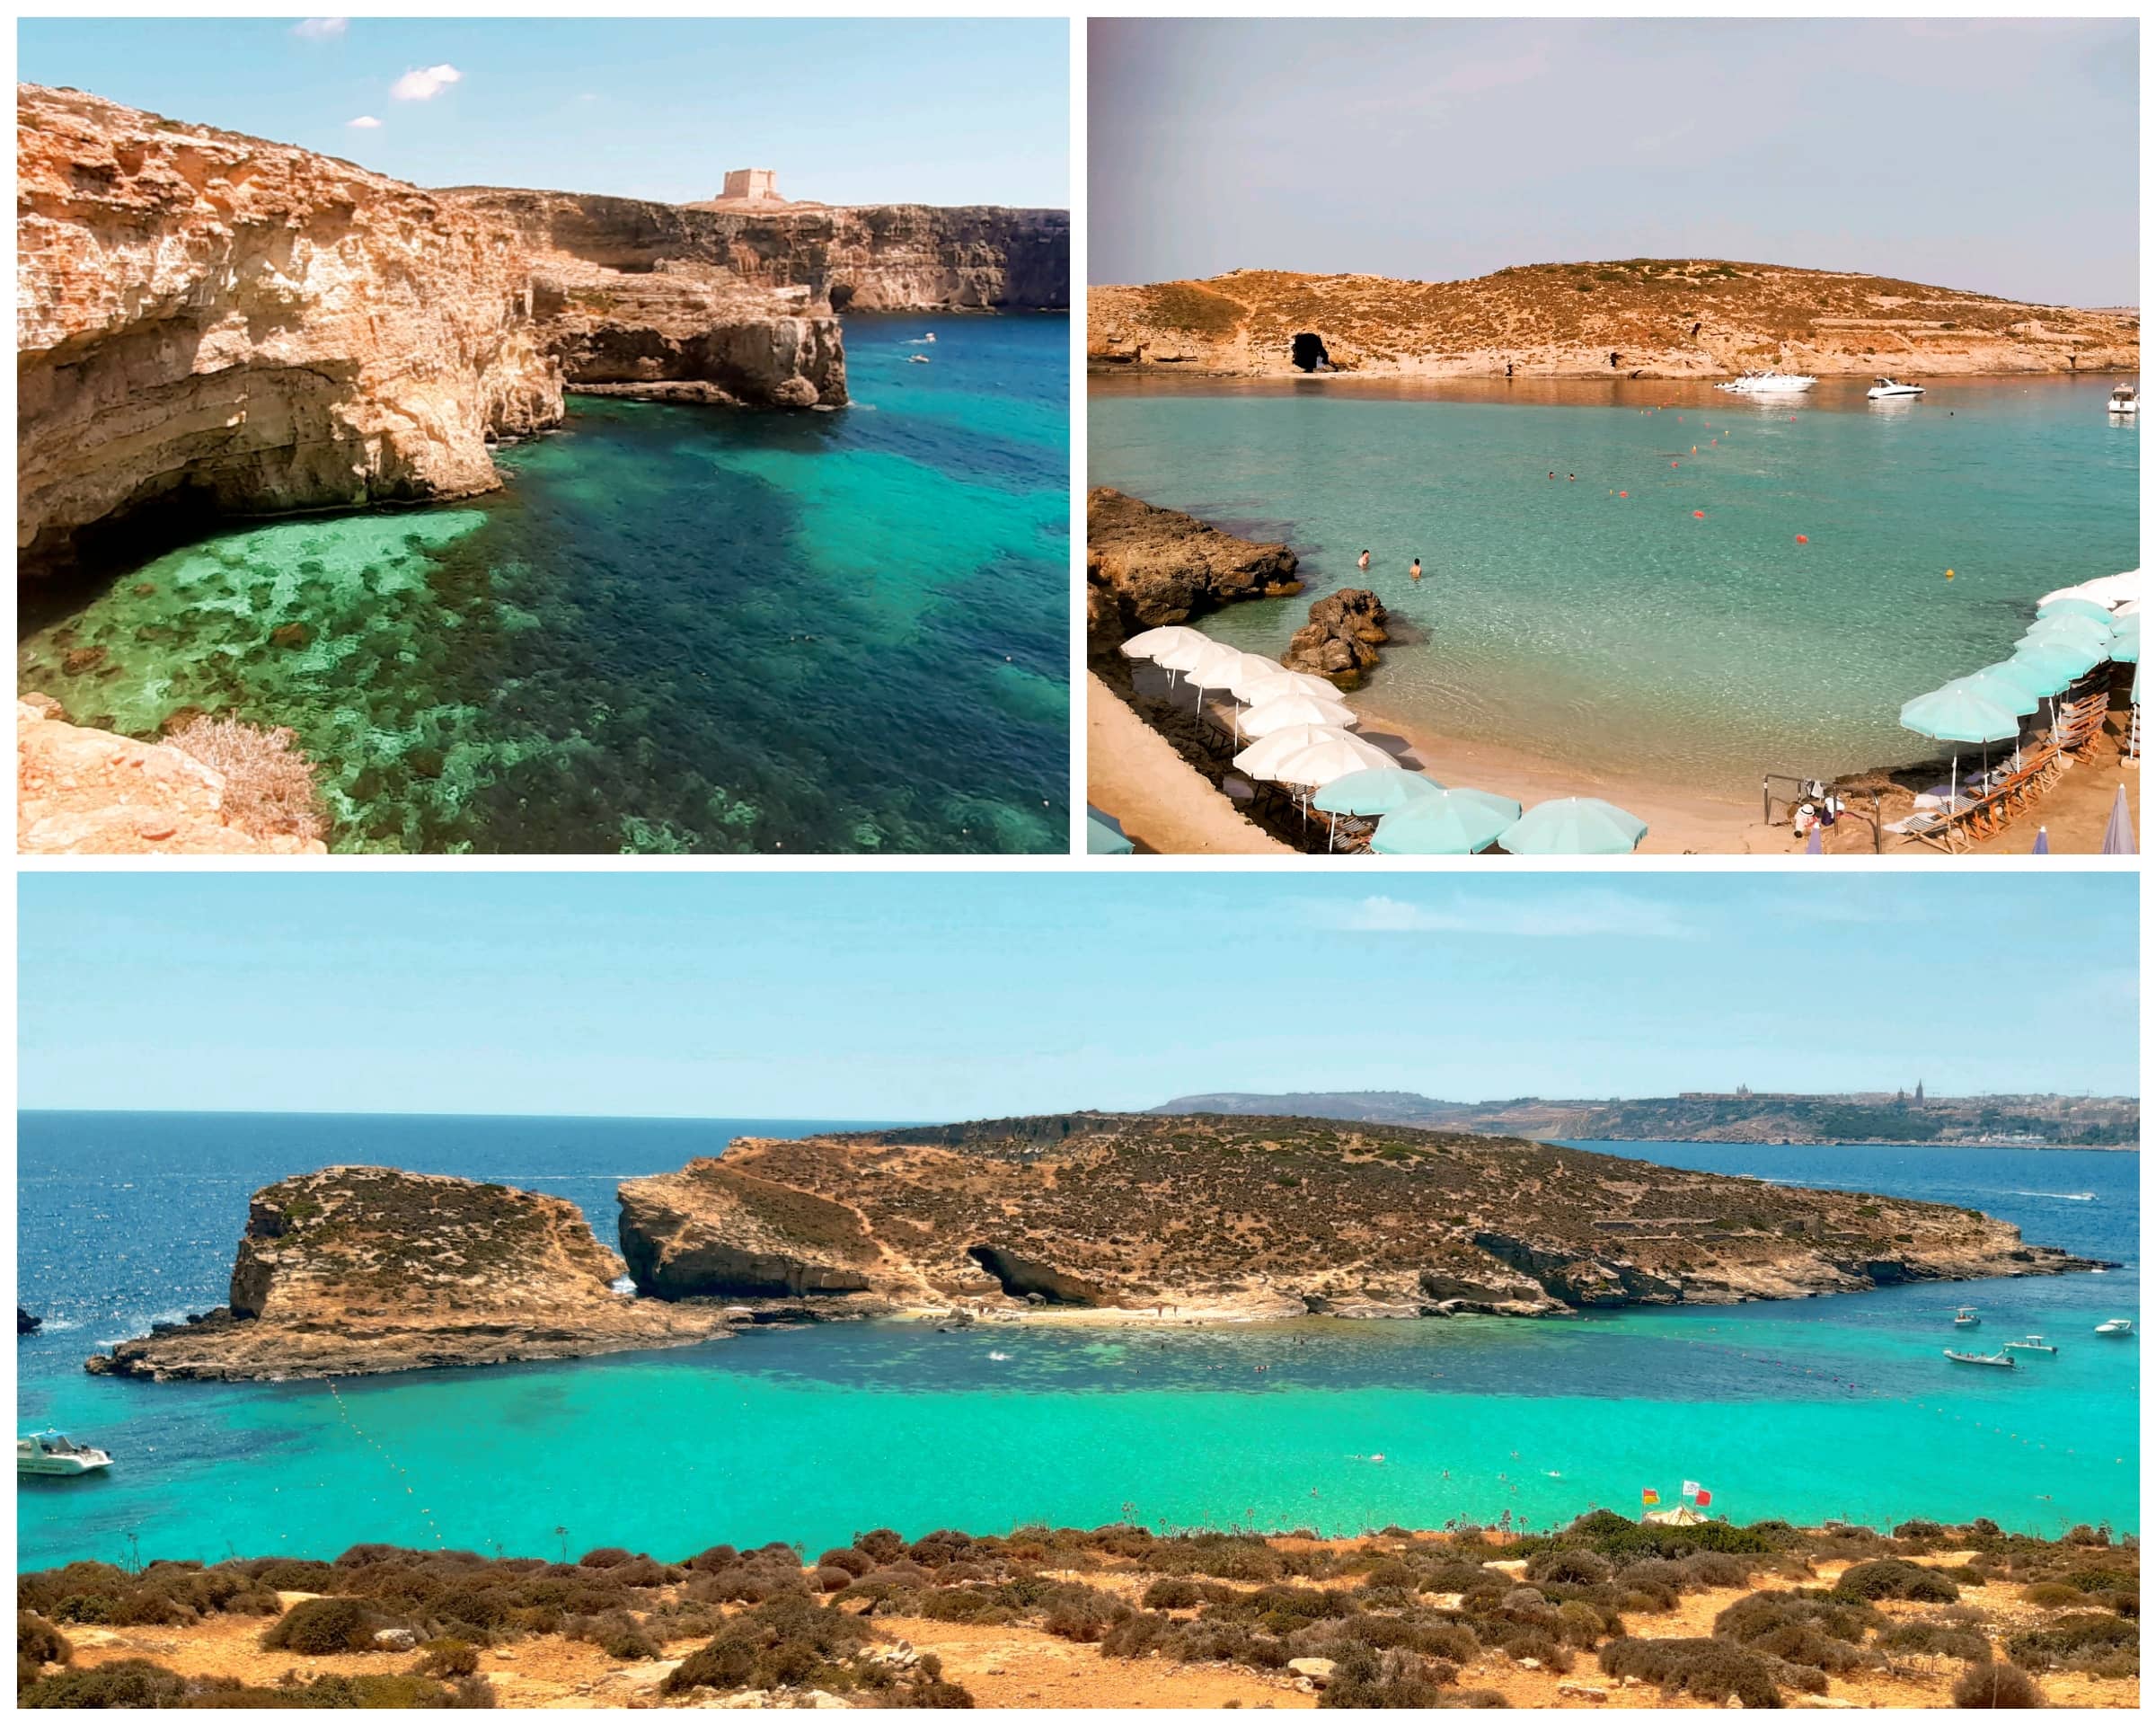 Séjour à Malte - visiter Comino, le Blue Lagoon et ses eaux turquoise